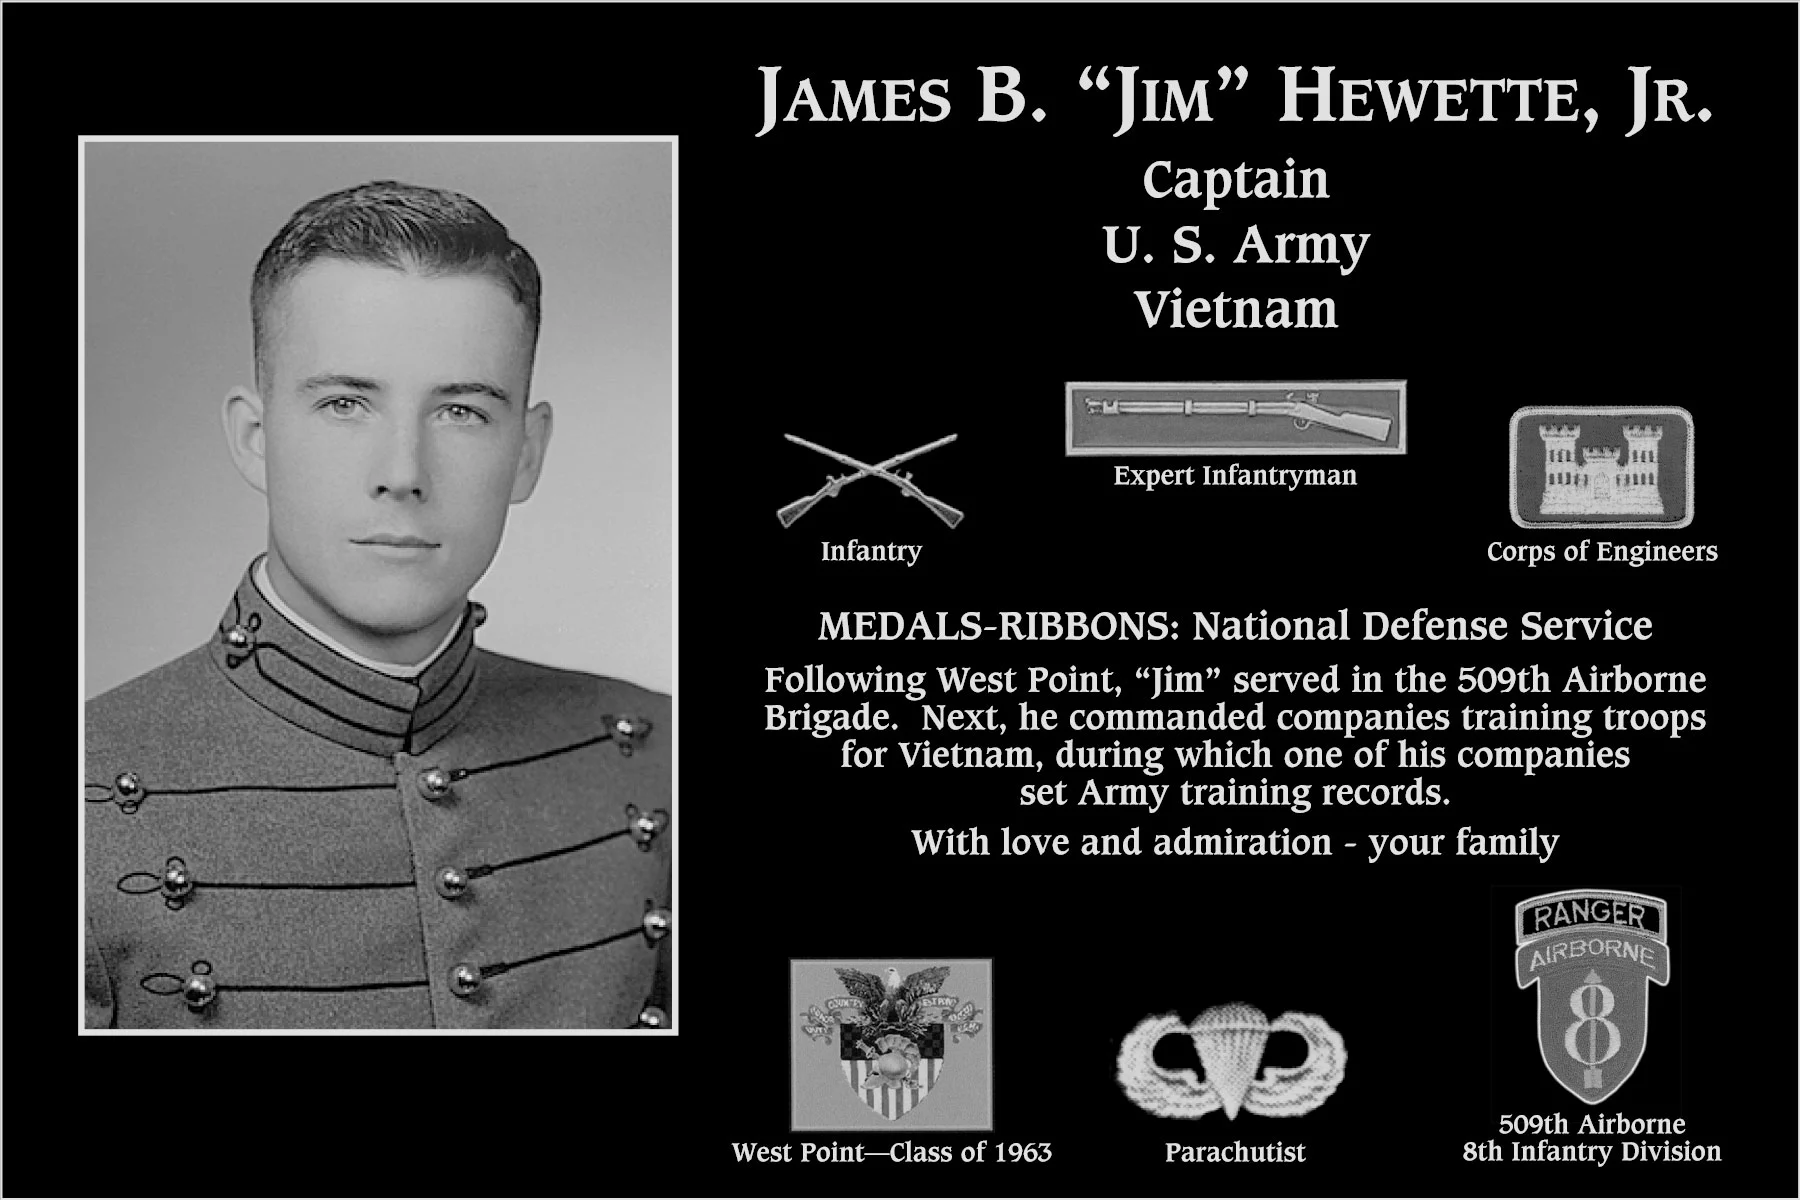 James B “Jim” Hewette, jr